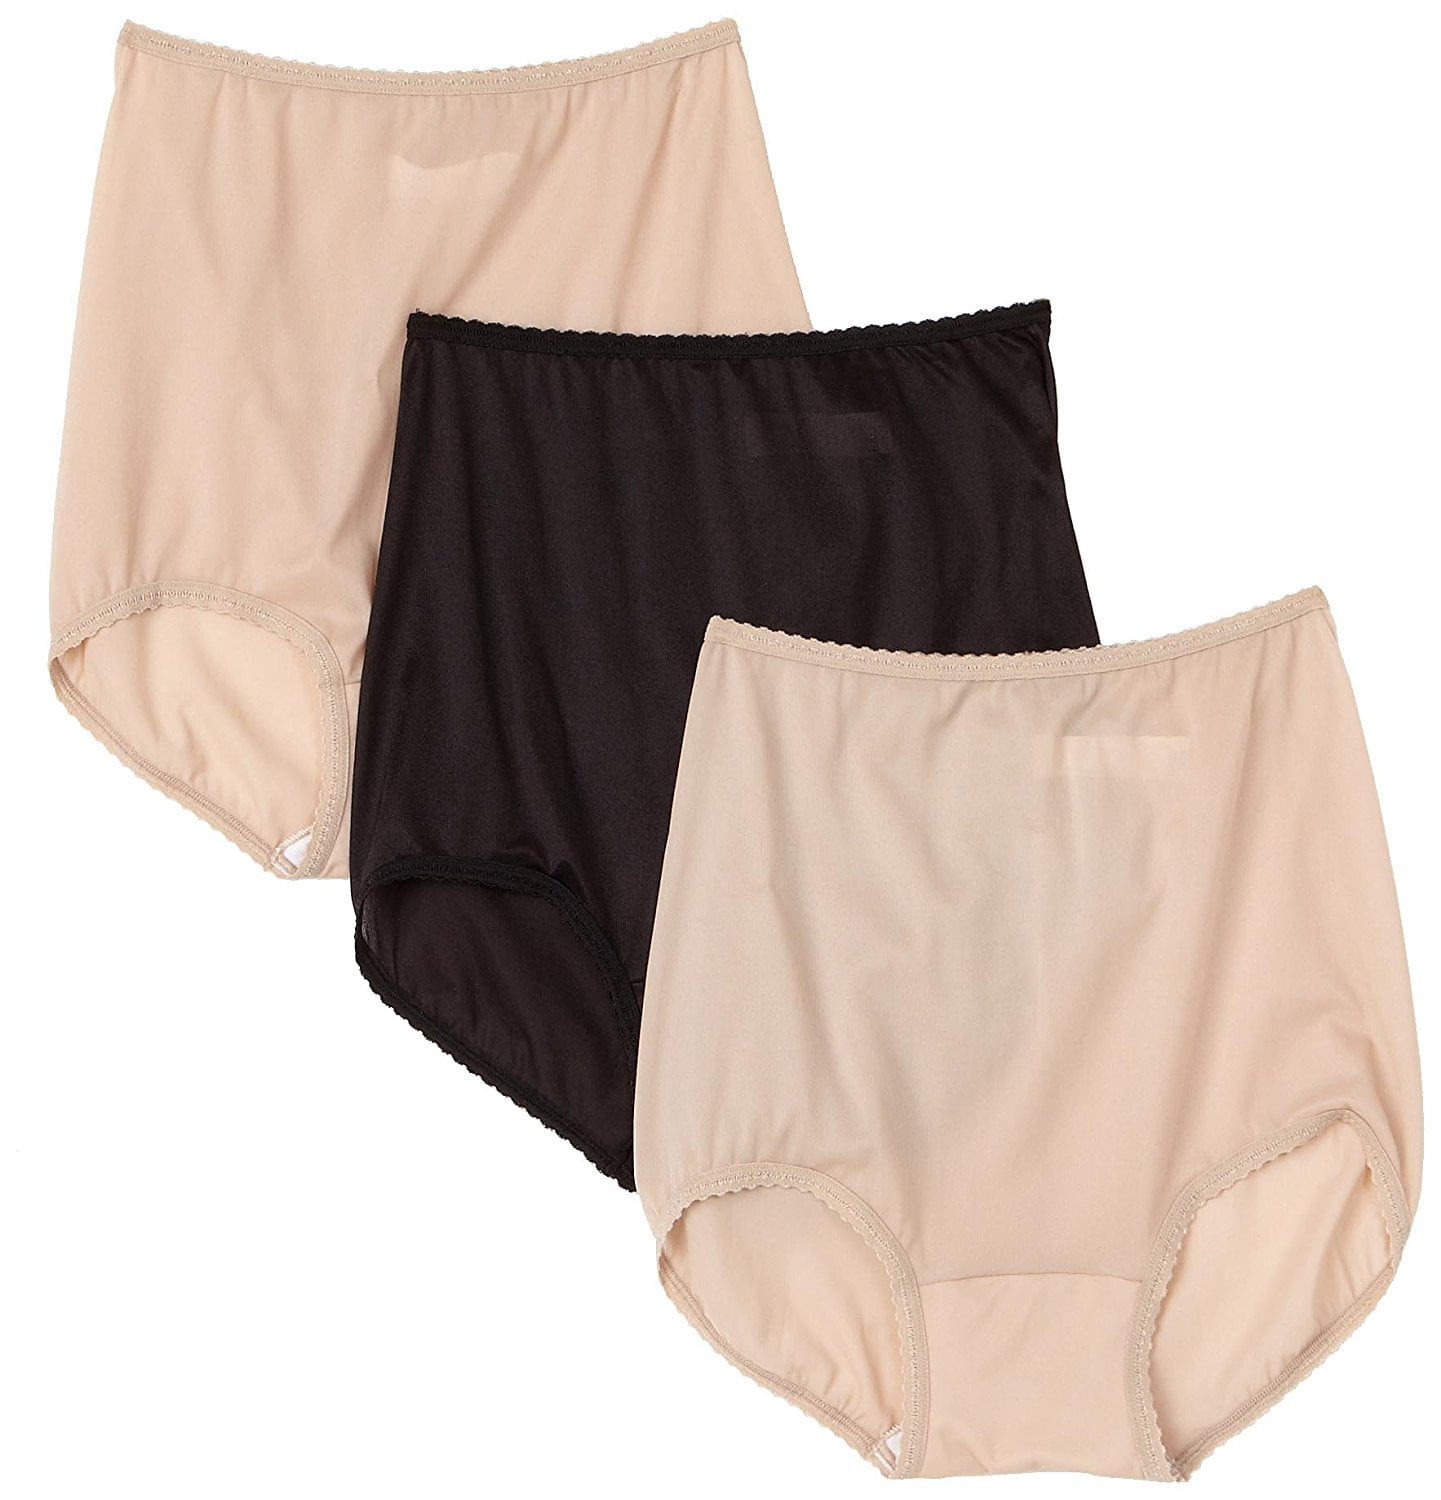 Bali Skimp Skamp Brief Panty 3 Pack - Walmart.com